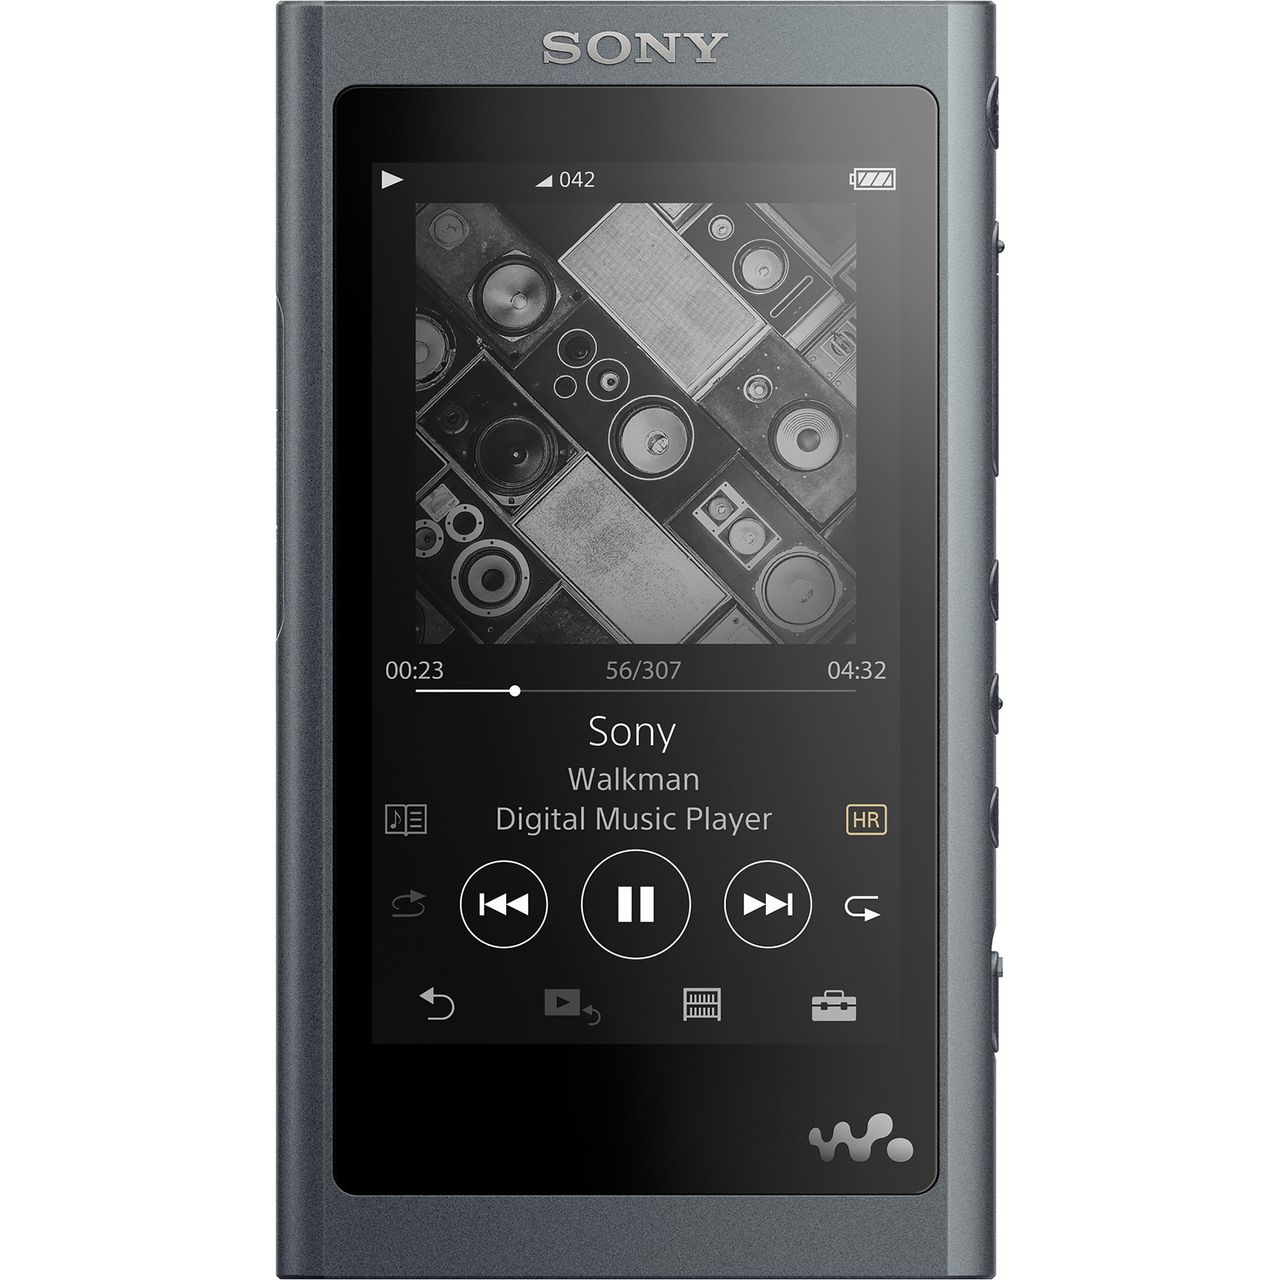 Sony A55 Walkman With Built-in USB Black 4548736080164 | eBay